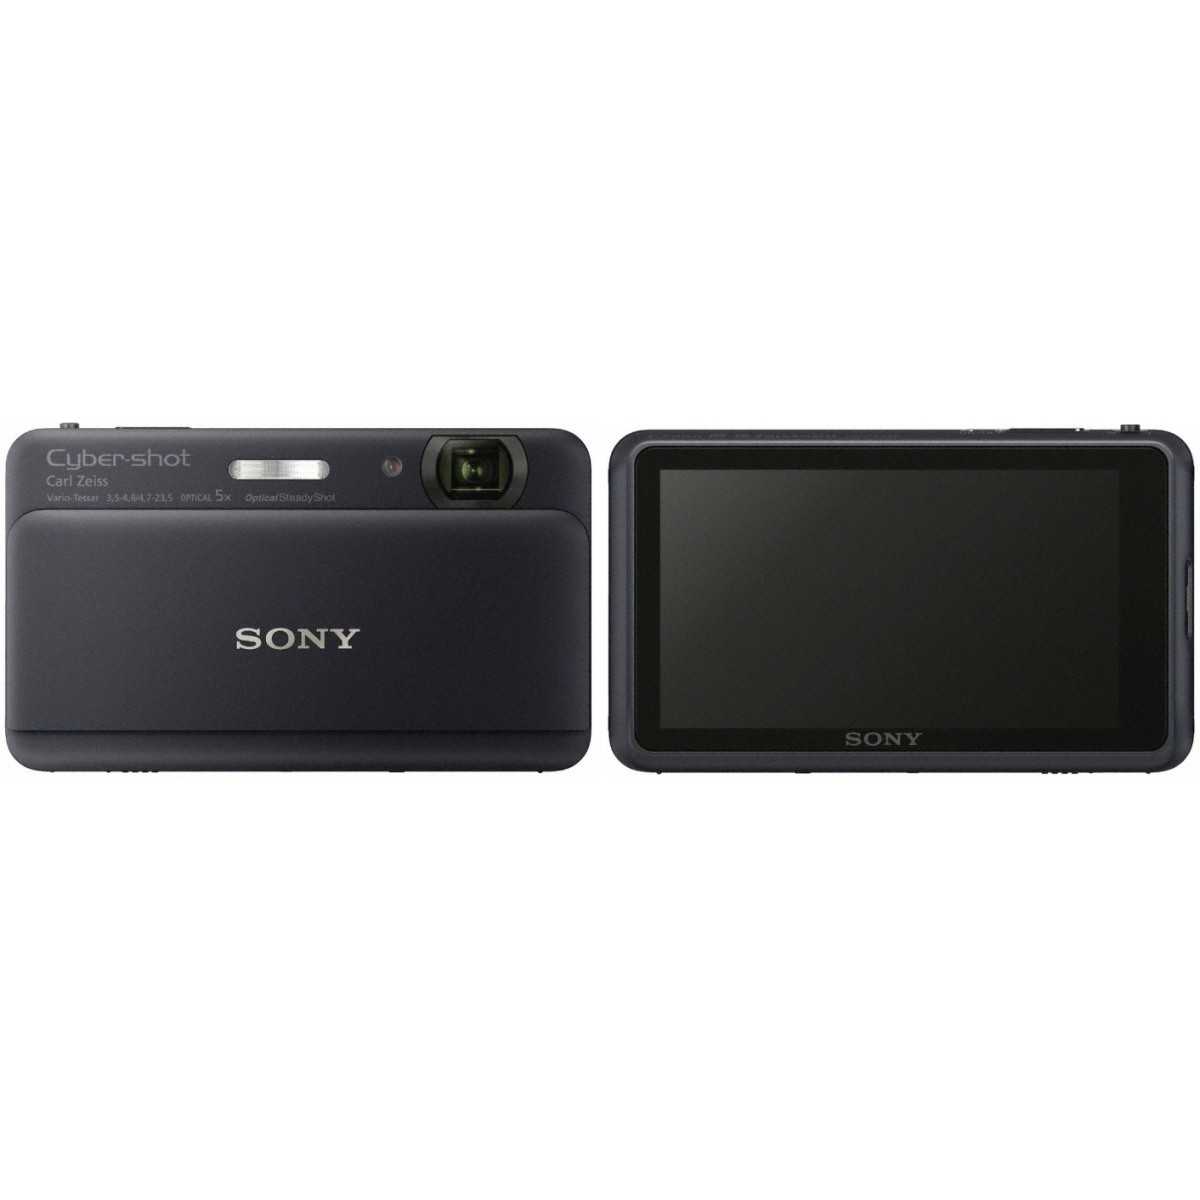 Sony cyber-shot dsc-tx55 купить - одинцово по акционной цене , отзывы и обзоры.